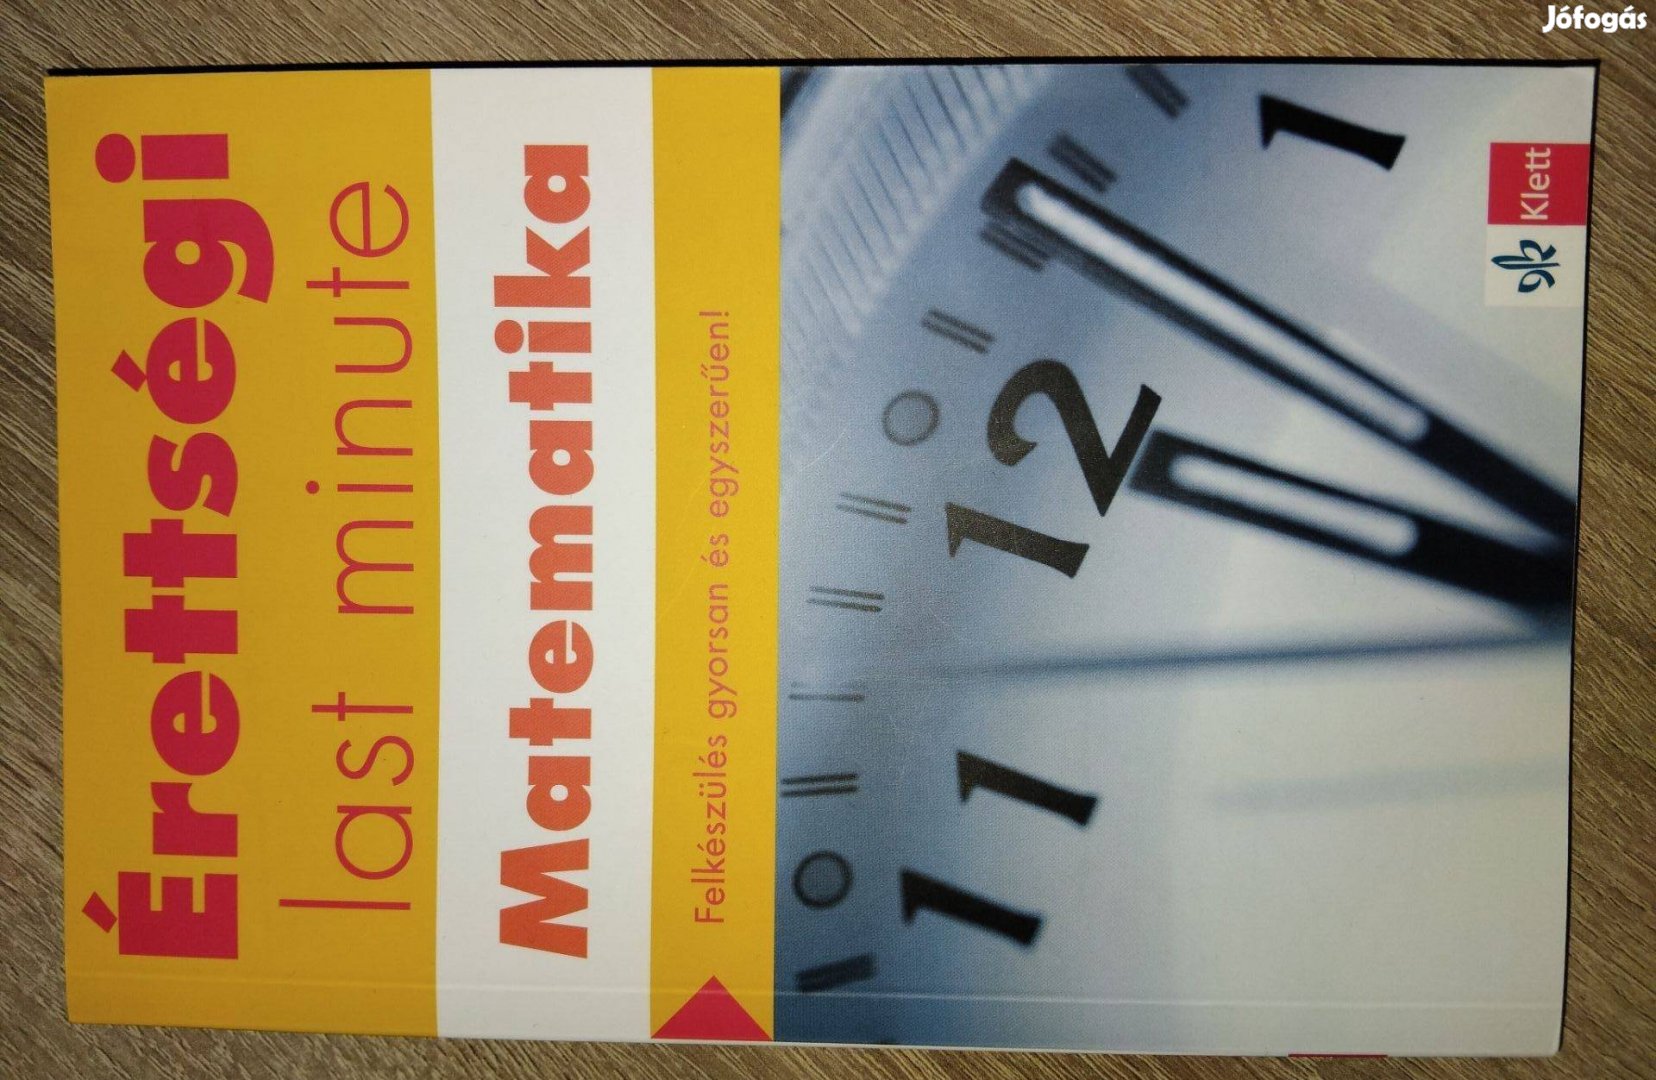 Matematika "last minute" érettségi könyv olcsón eladó